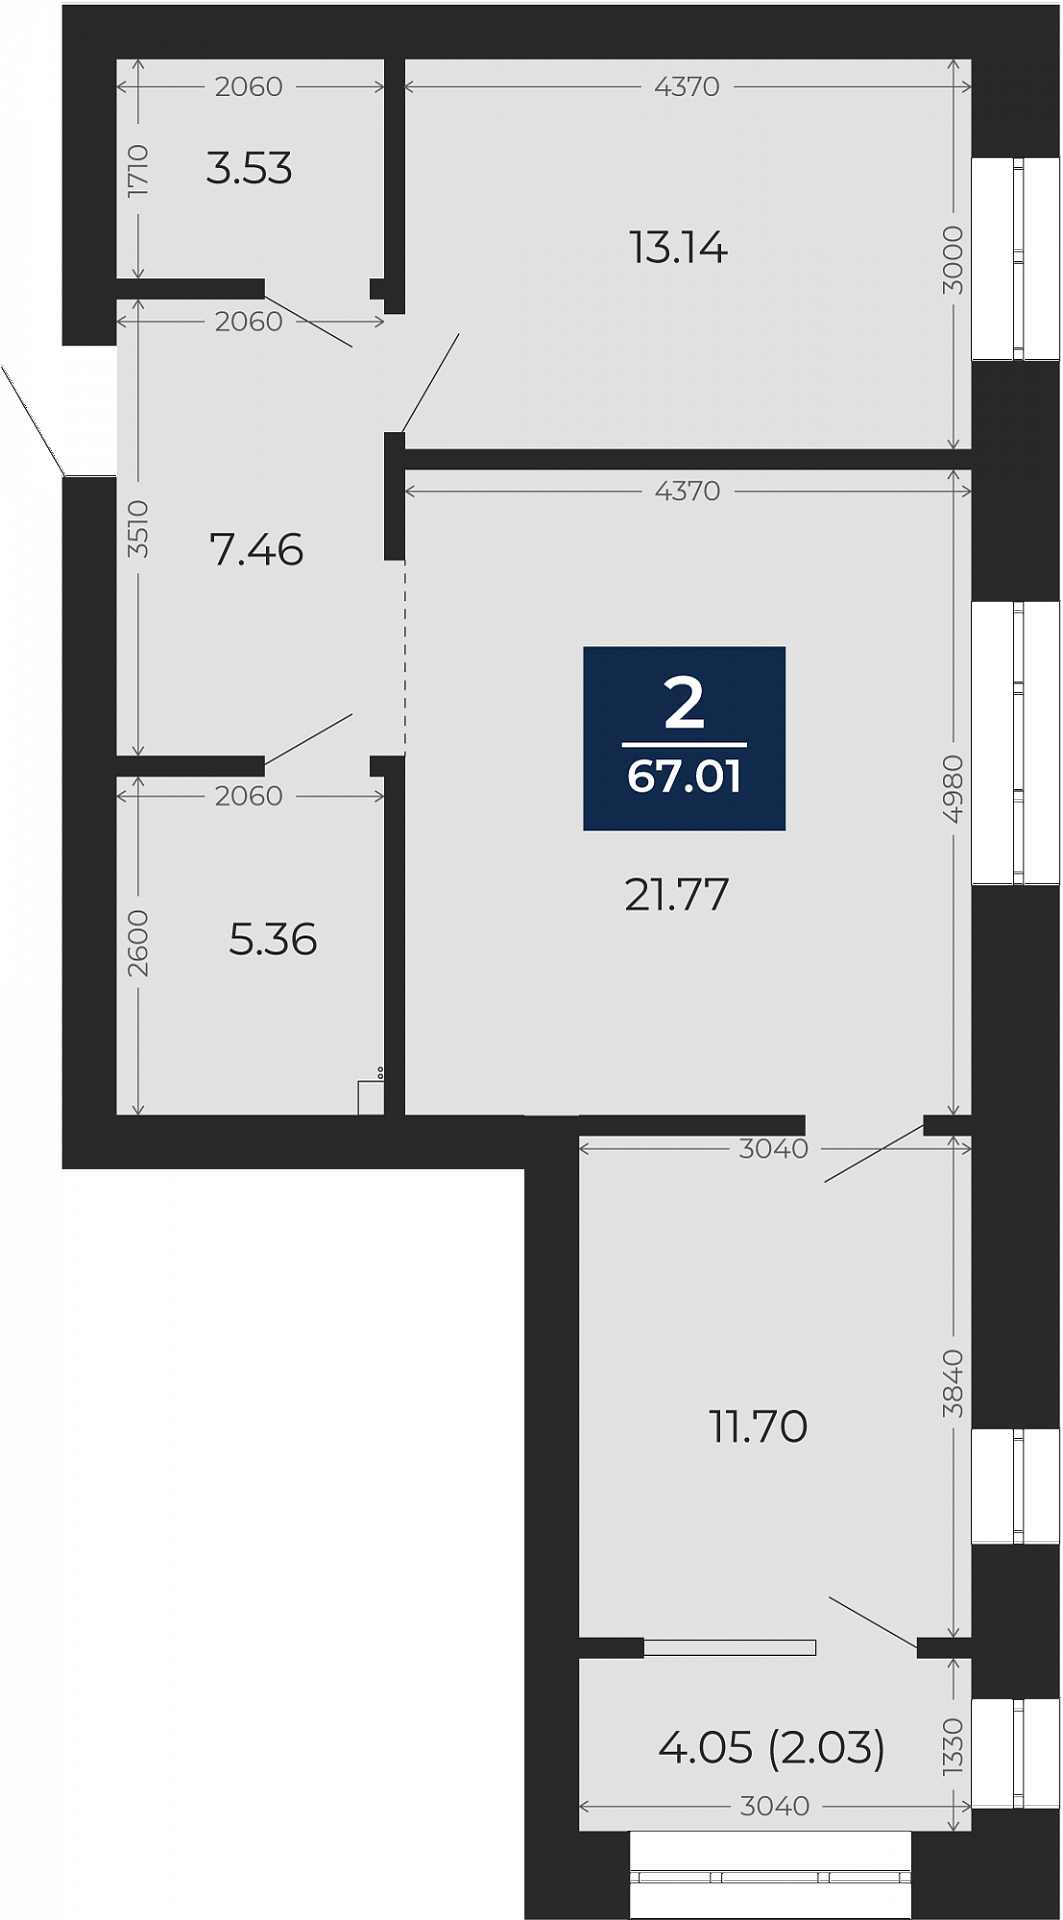 Квартира № 176, 2-комнатная, 67.01 кв. м, 10 этаж